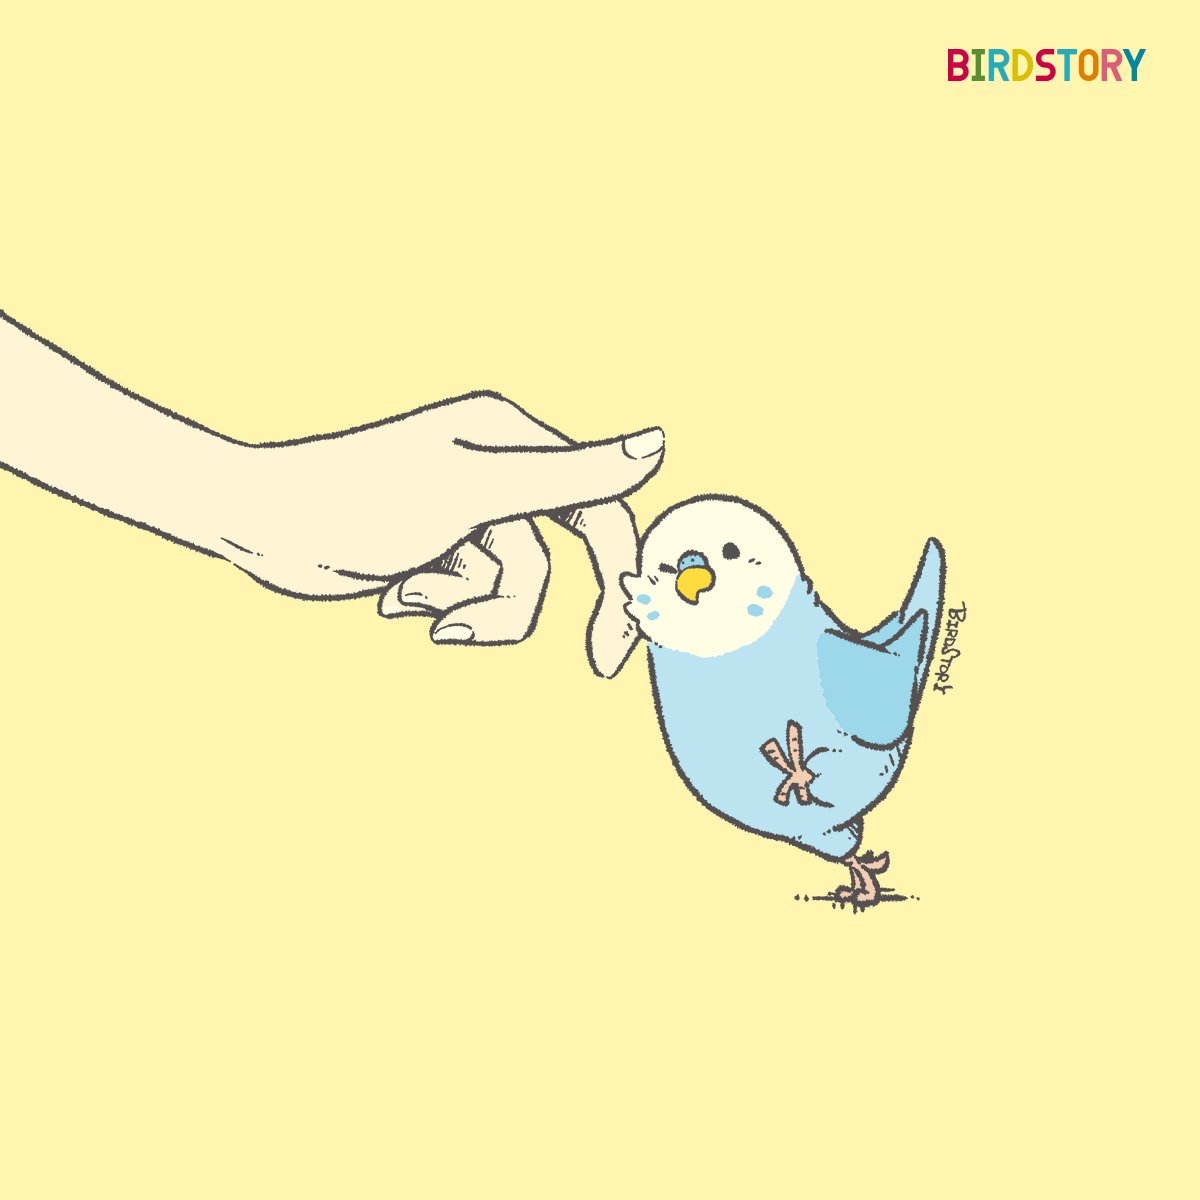 「おはようございます。本日は3月2日、語呂合わせから、ミニの日小さいものを愛そうと」|BIRDSTORYのイラスト